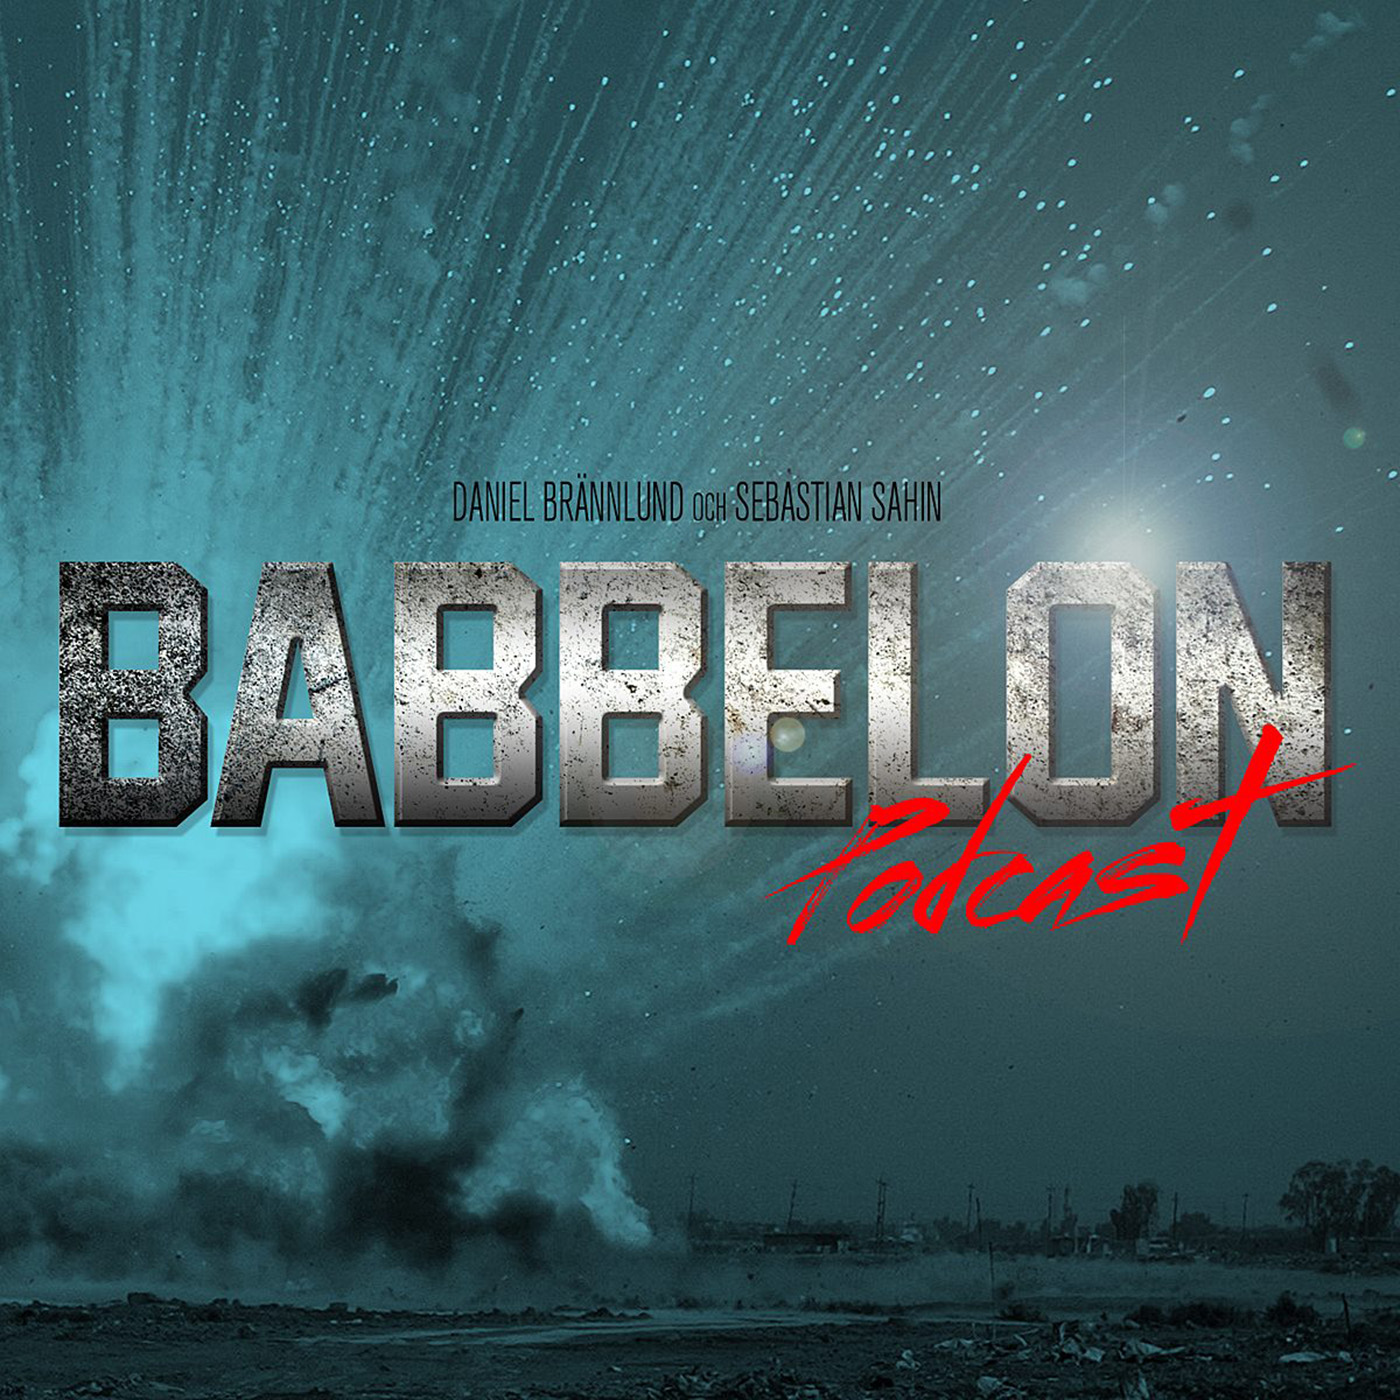 Babbelon